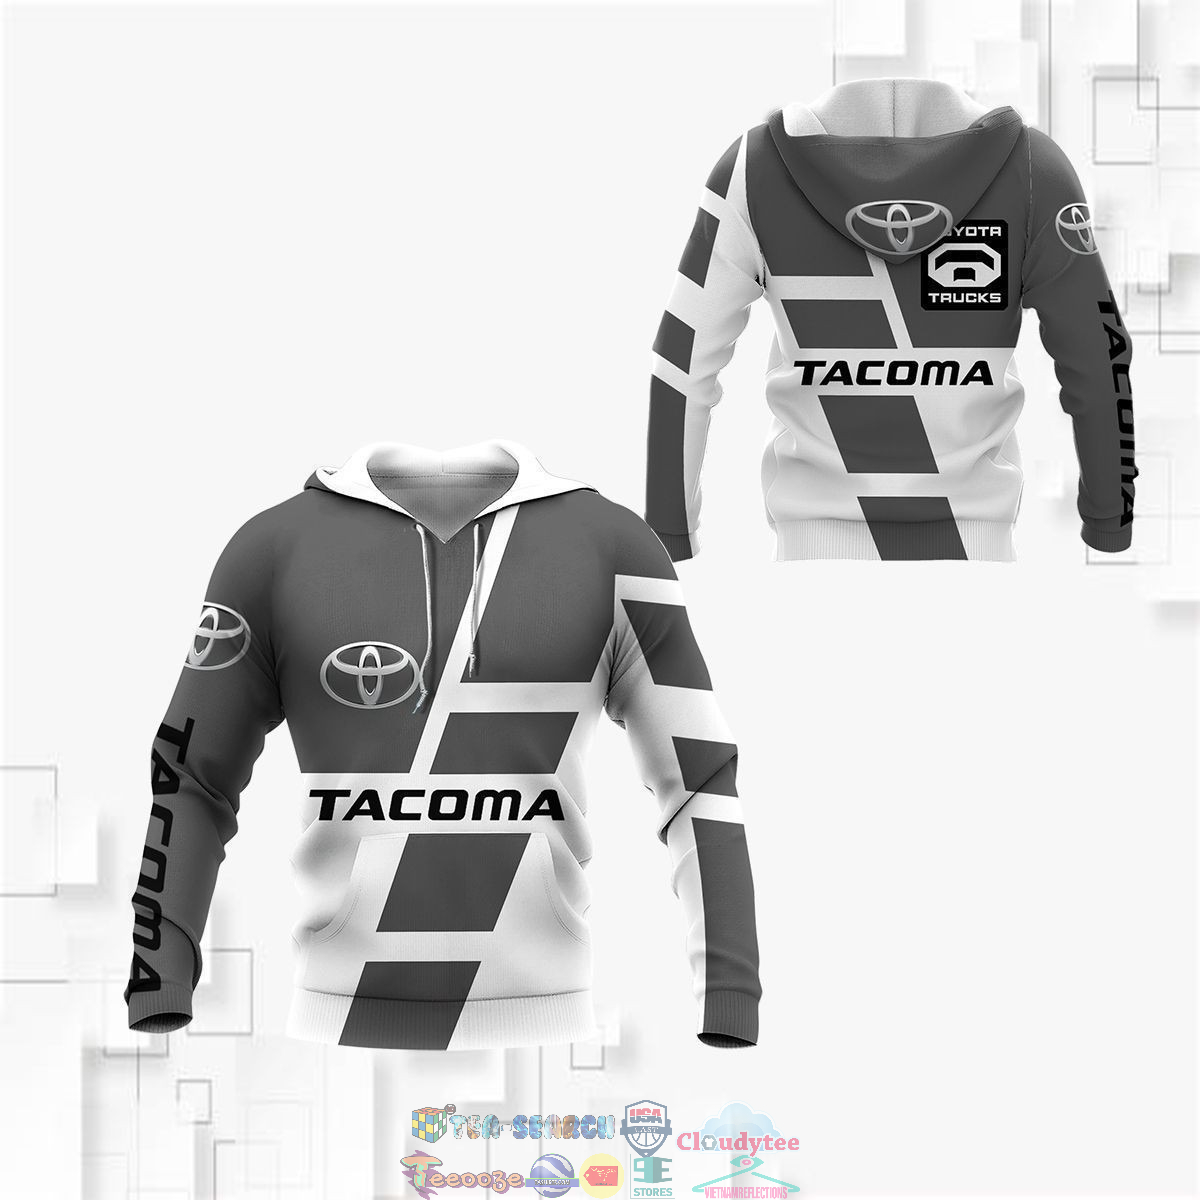 1exLtjhU-TH030822-44xxxToyota-Tacoma-ver-6-3D-hoodie-and-t-shirt3.jpg